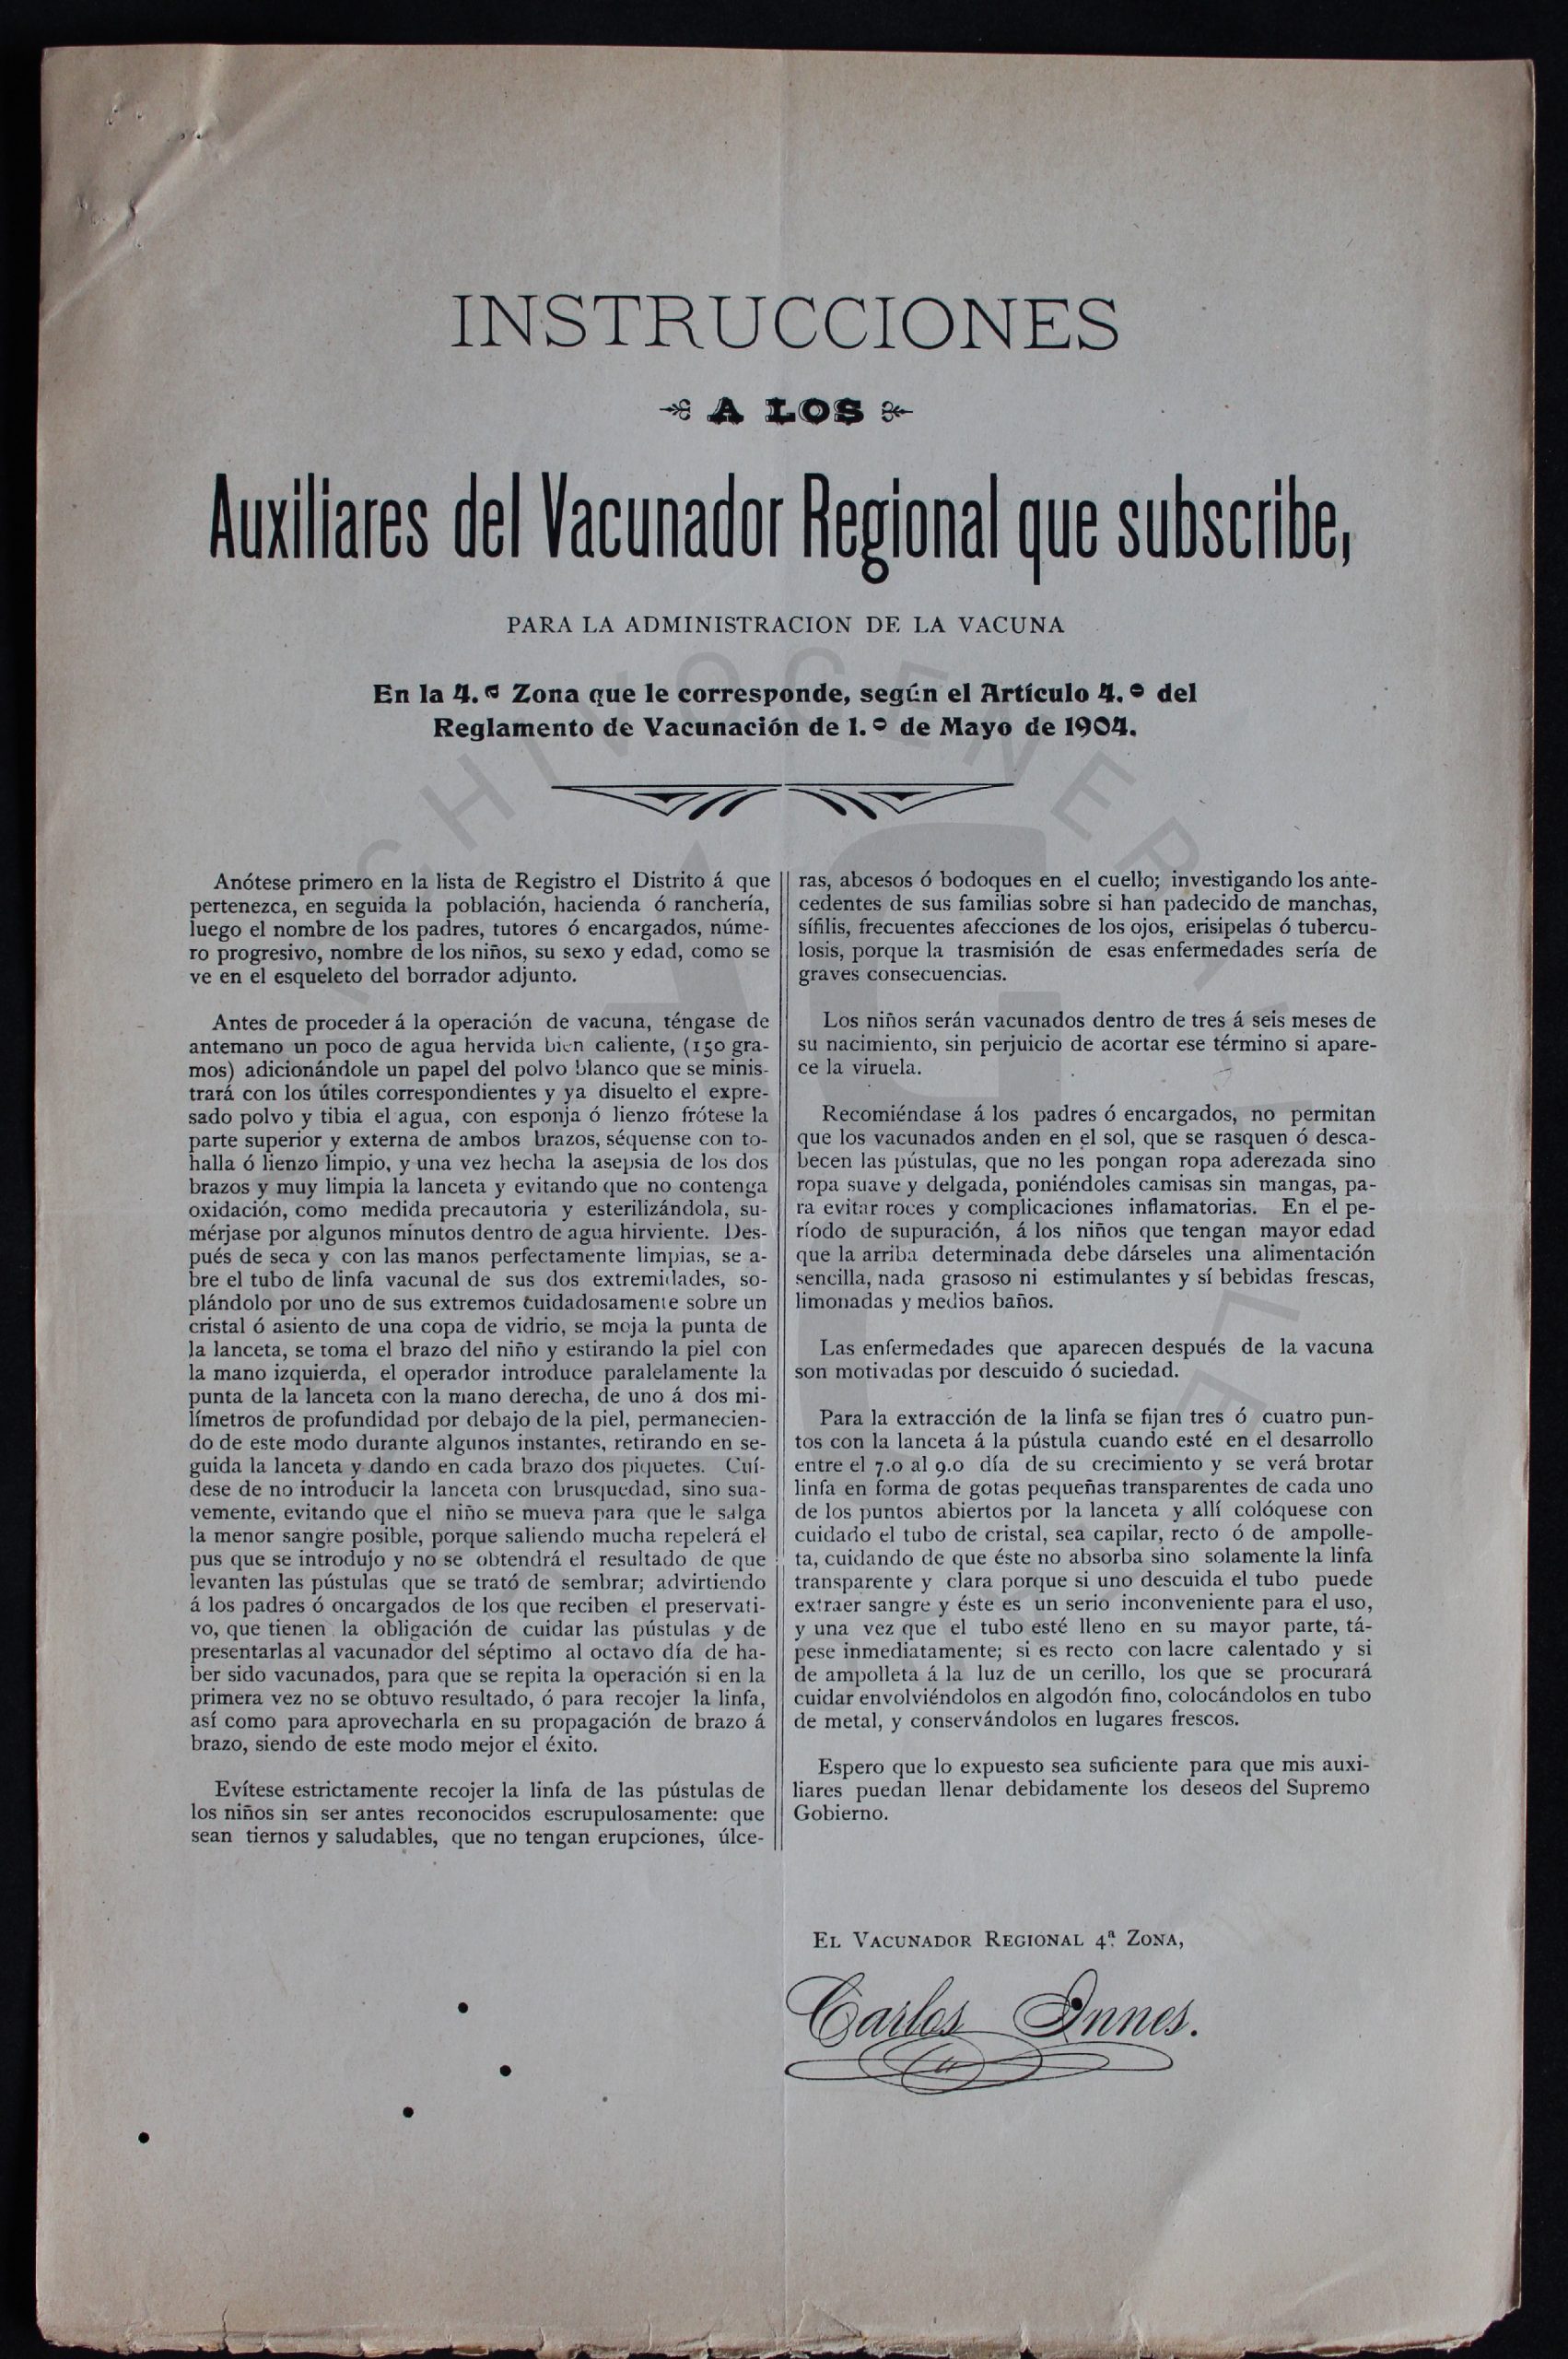 La labor de los vacunadores regionales contra la viruela, en los distritos de Ejutla y Villa Alta, en el estado de Oaxaca en el año de 1905